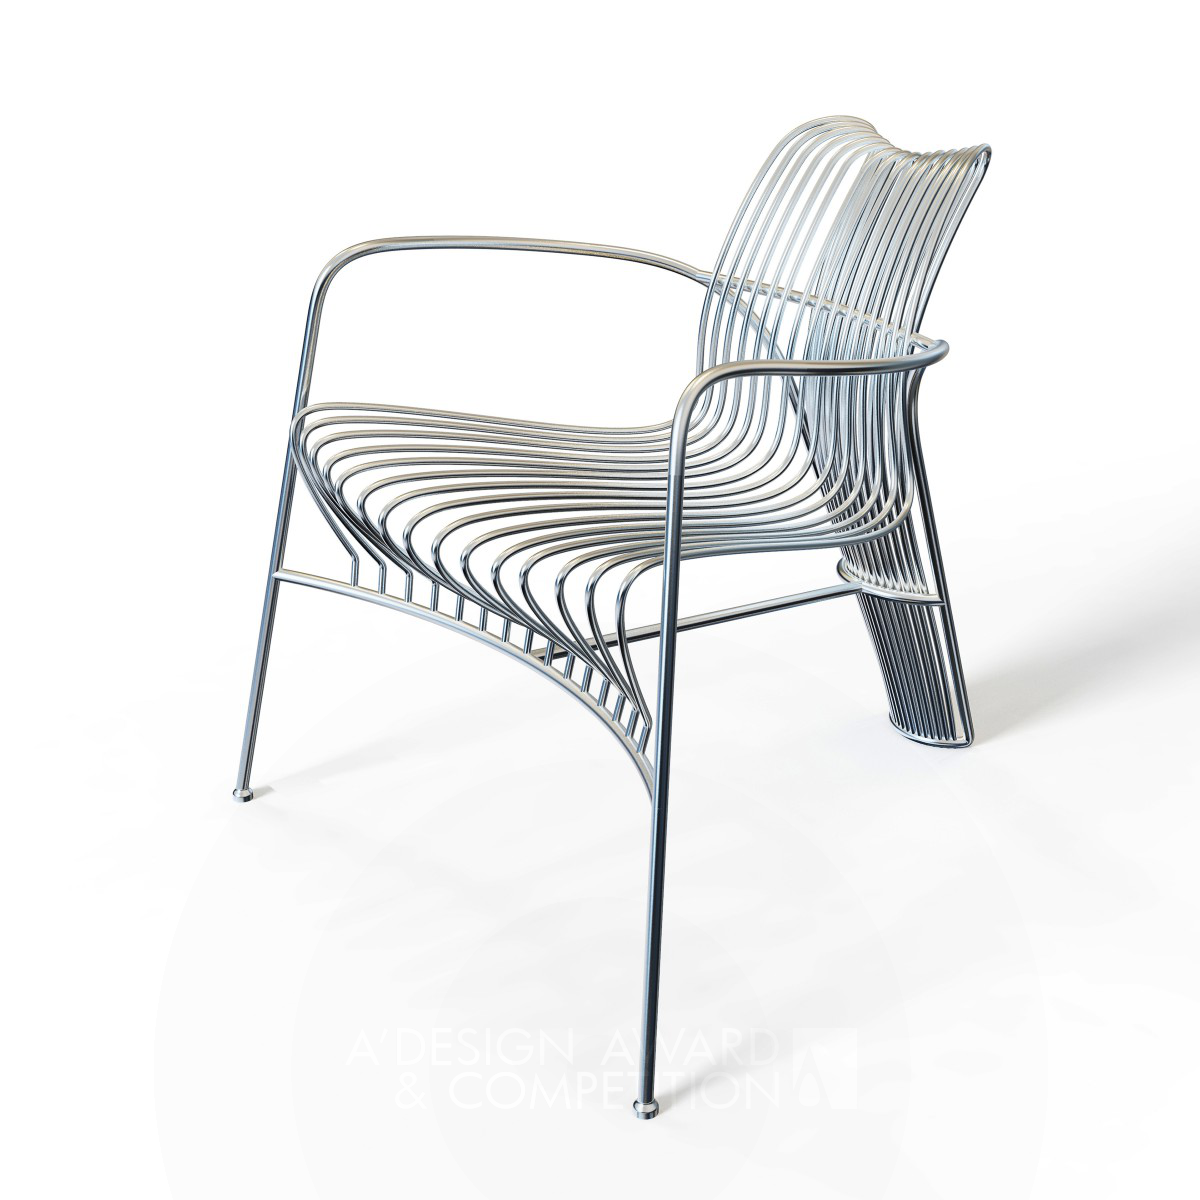 "Strings" Leisure Chair Design